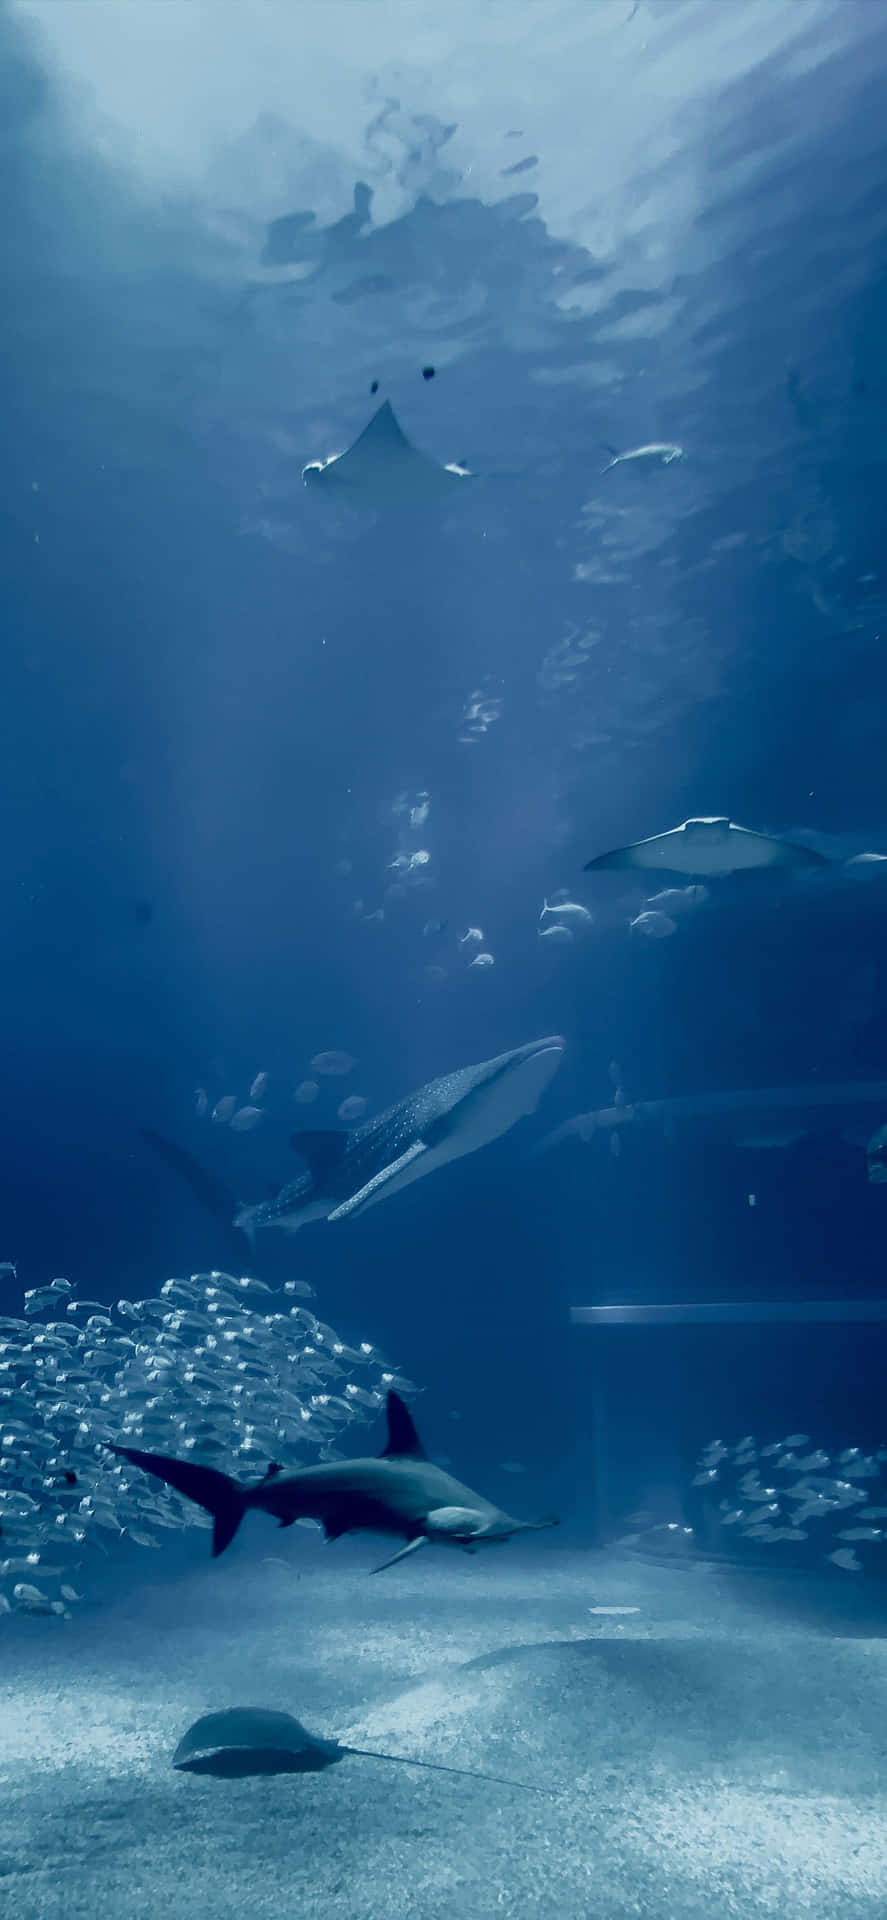 Dyk ned i skønheden af akvatiske liv med en Akvarium Iphone. Wallpaper